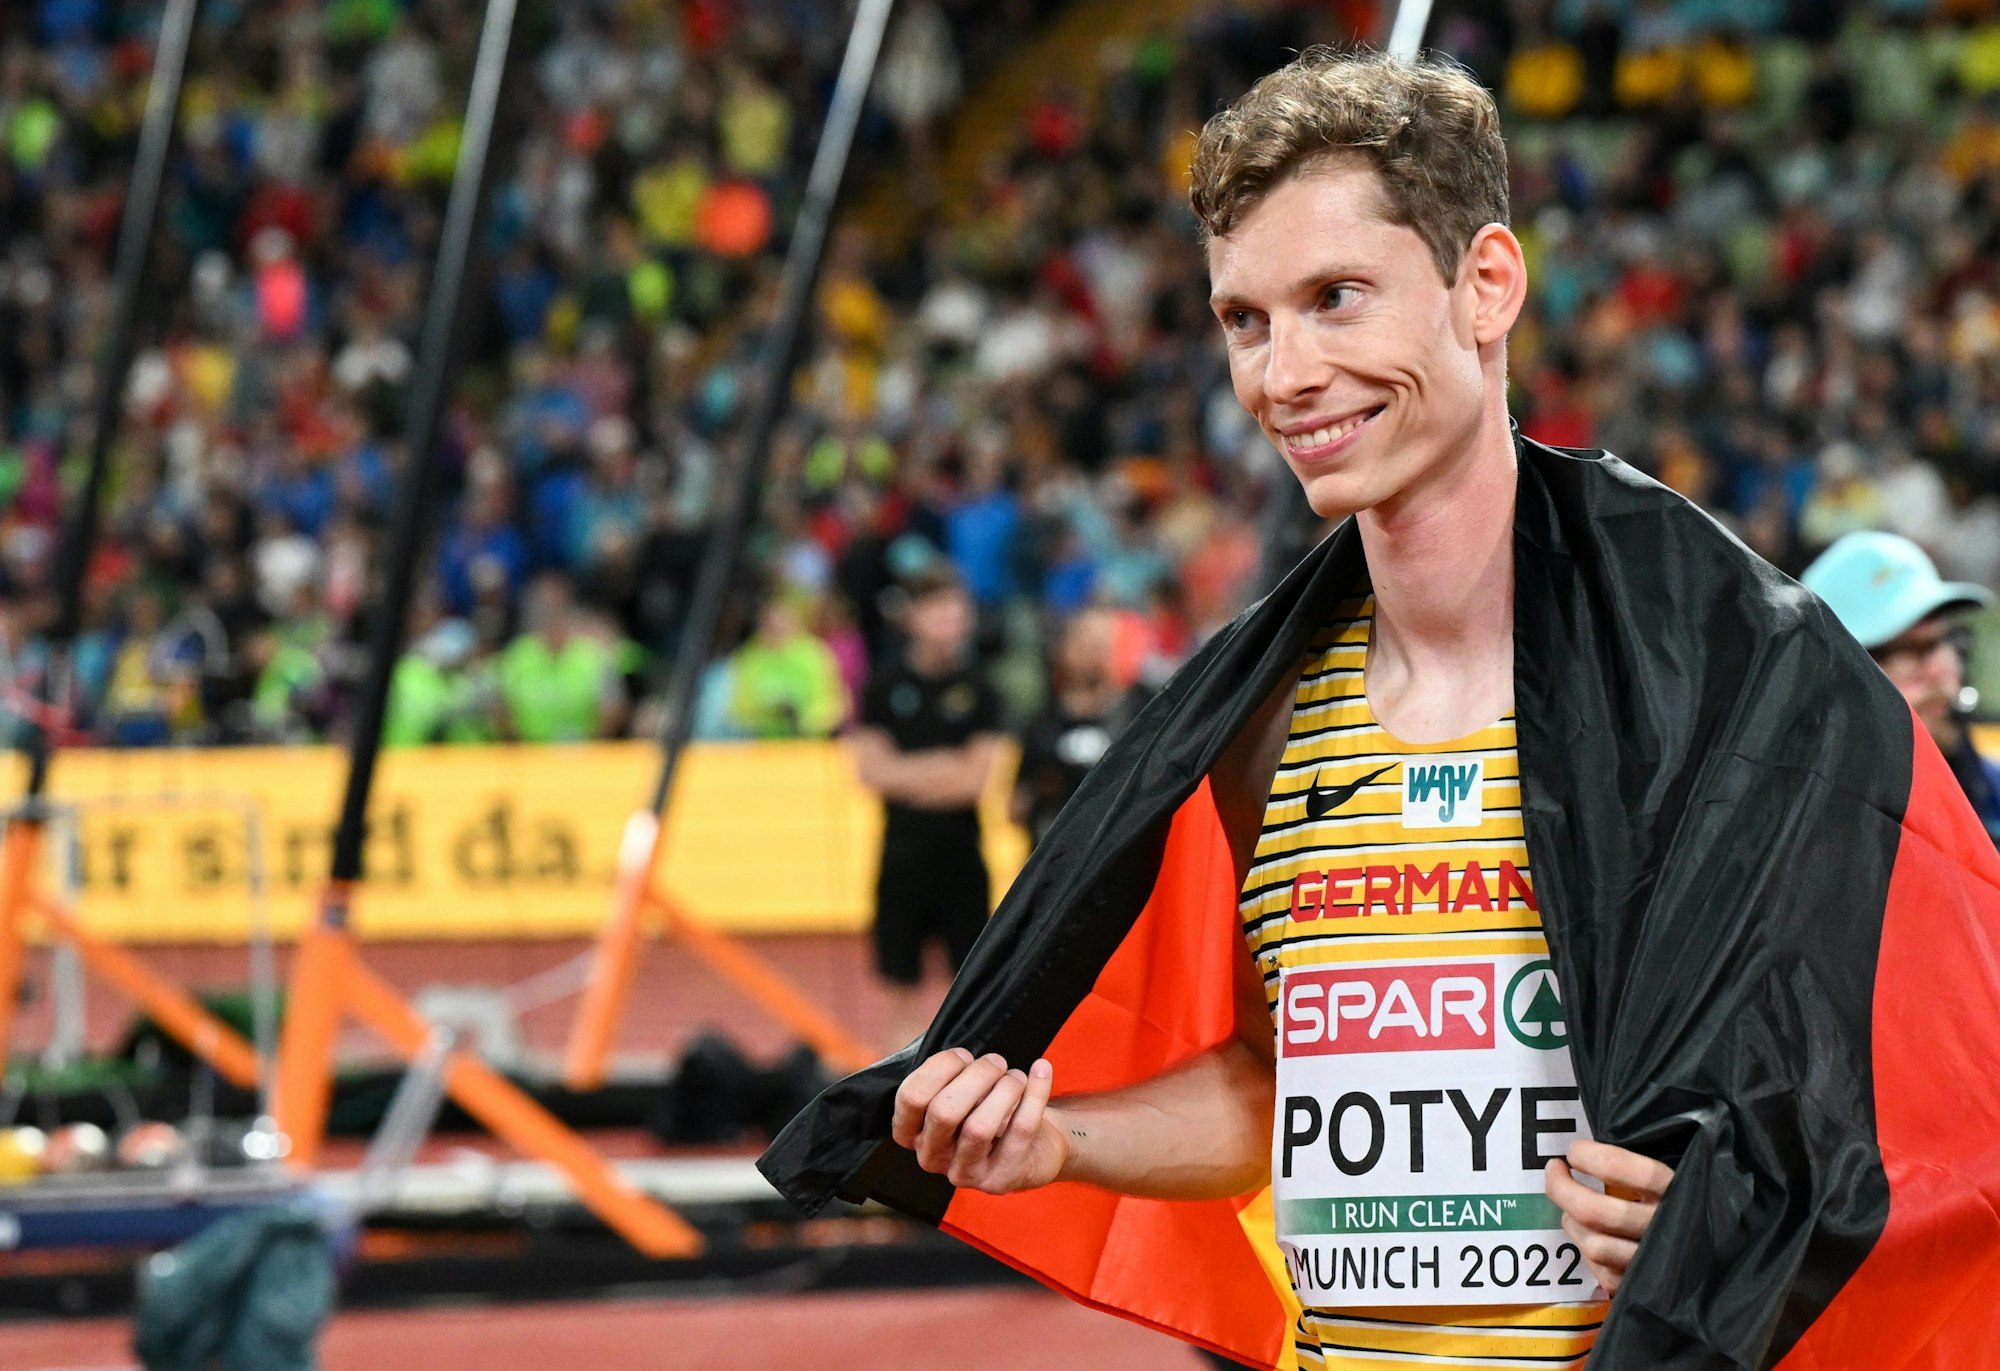 Hochsprung der Männer: Tobias Potye gewinnt überraschend Silber und feiert sich für den starken zweiten Platz.